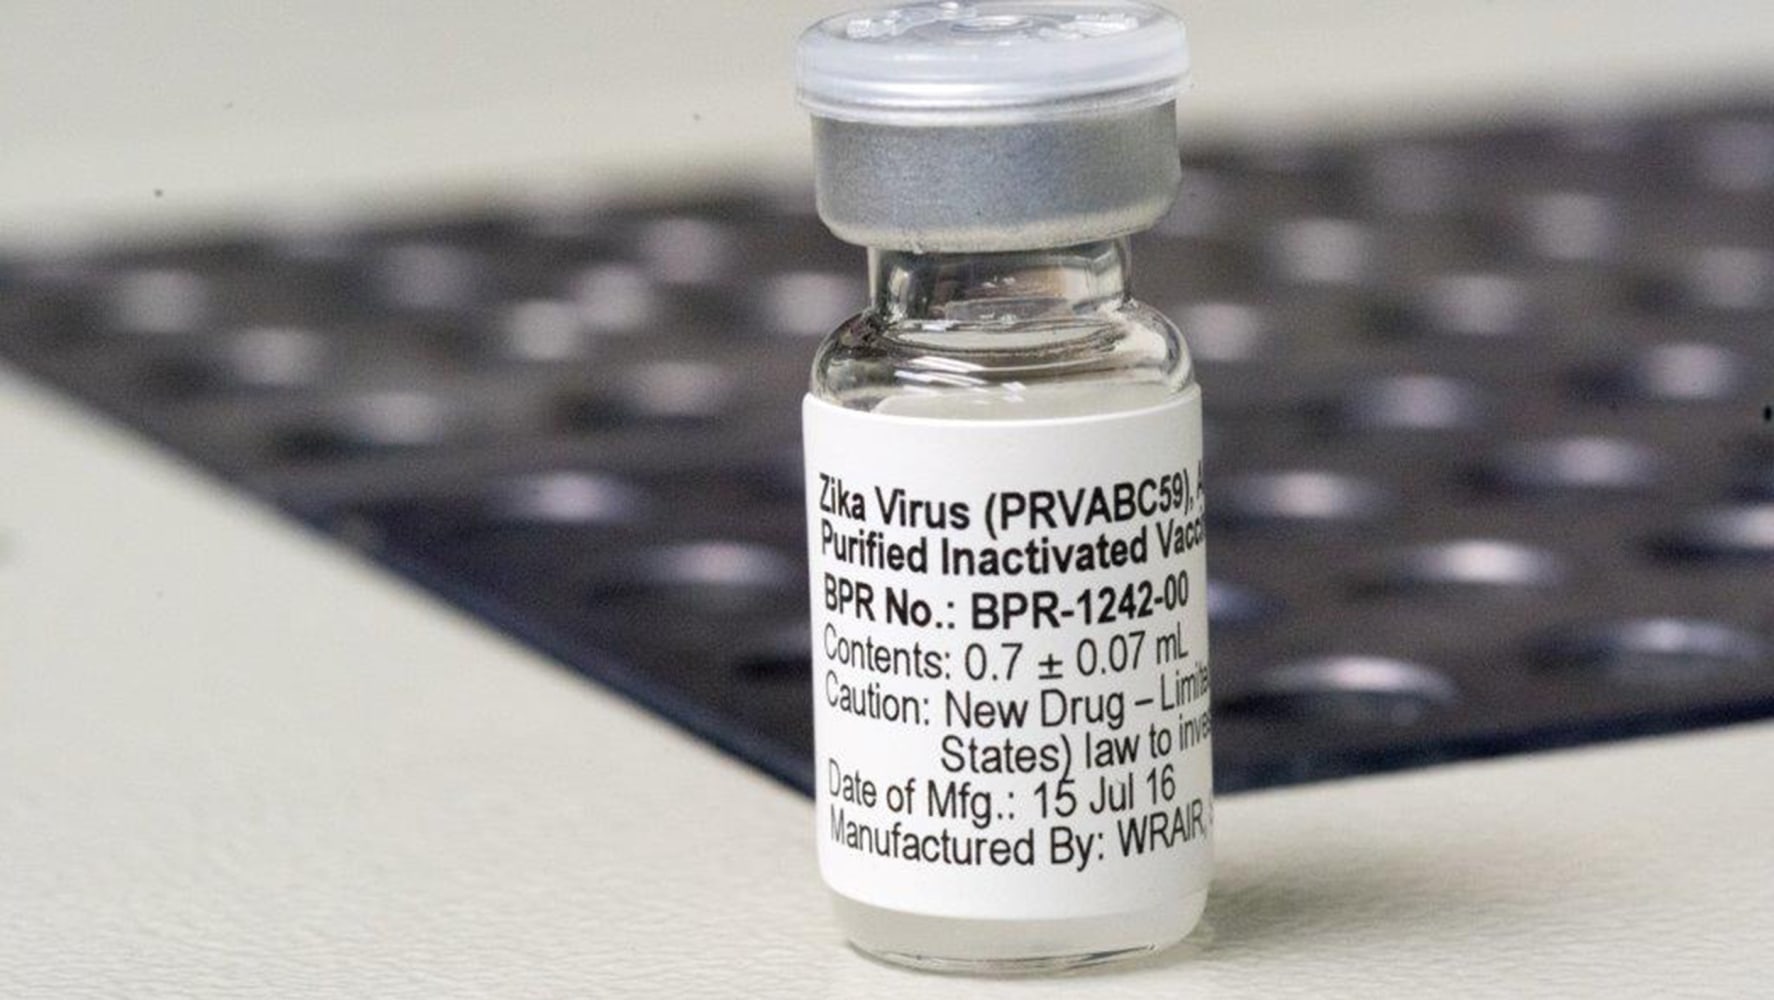 Resultado de imagem para zika virus vaccine